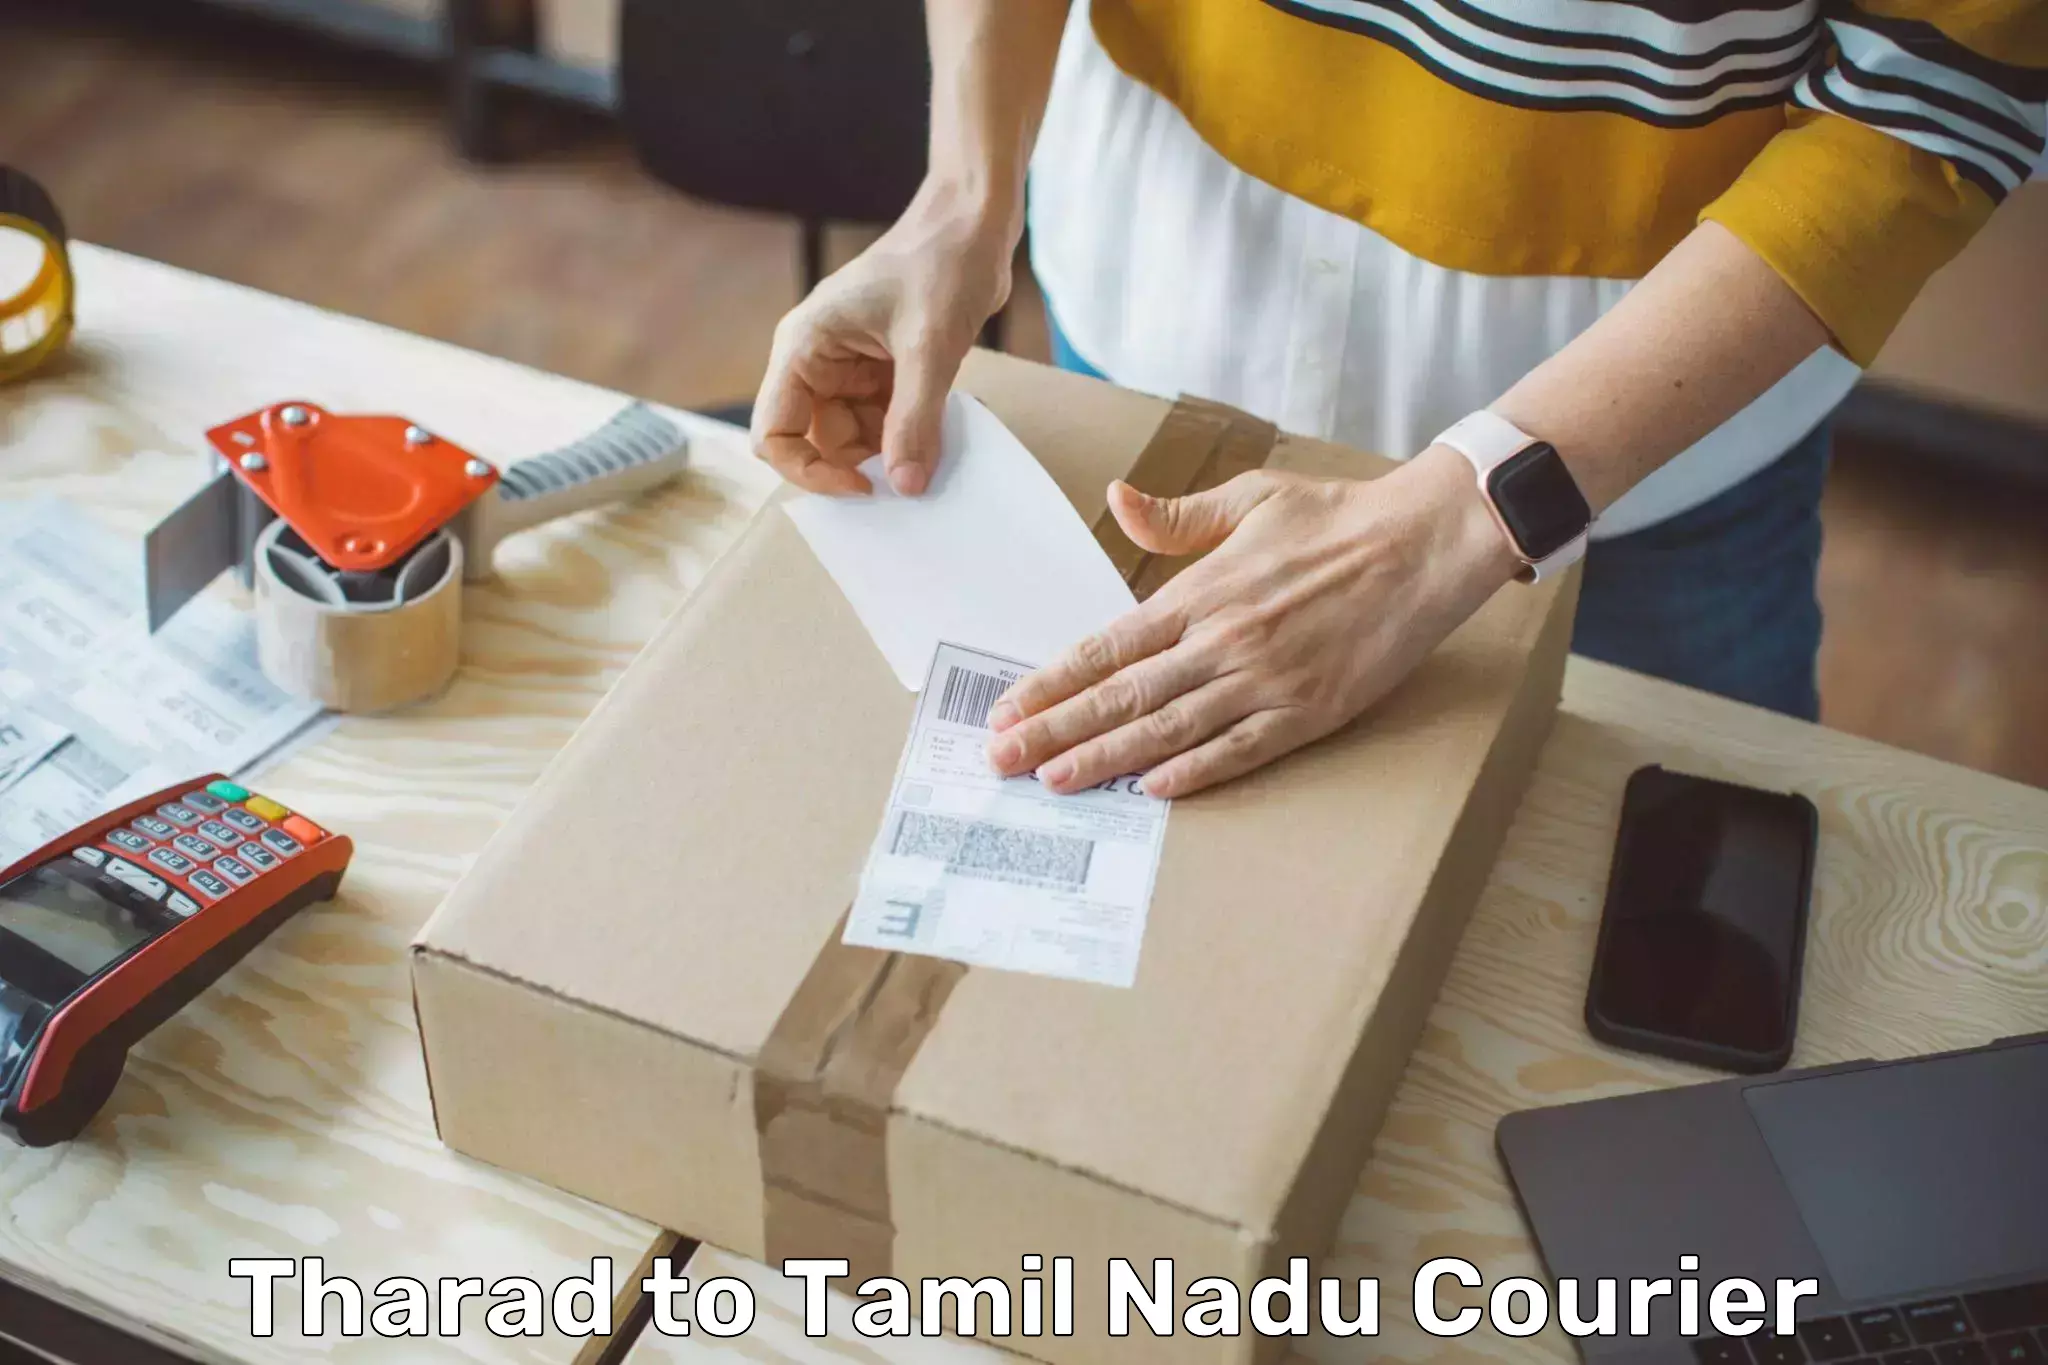 Door-to-door freight service Tharad to Tamil Nadu